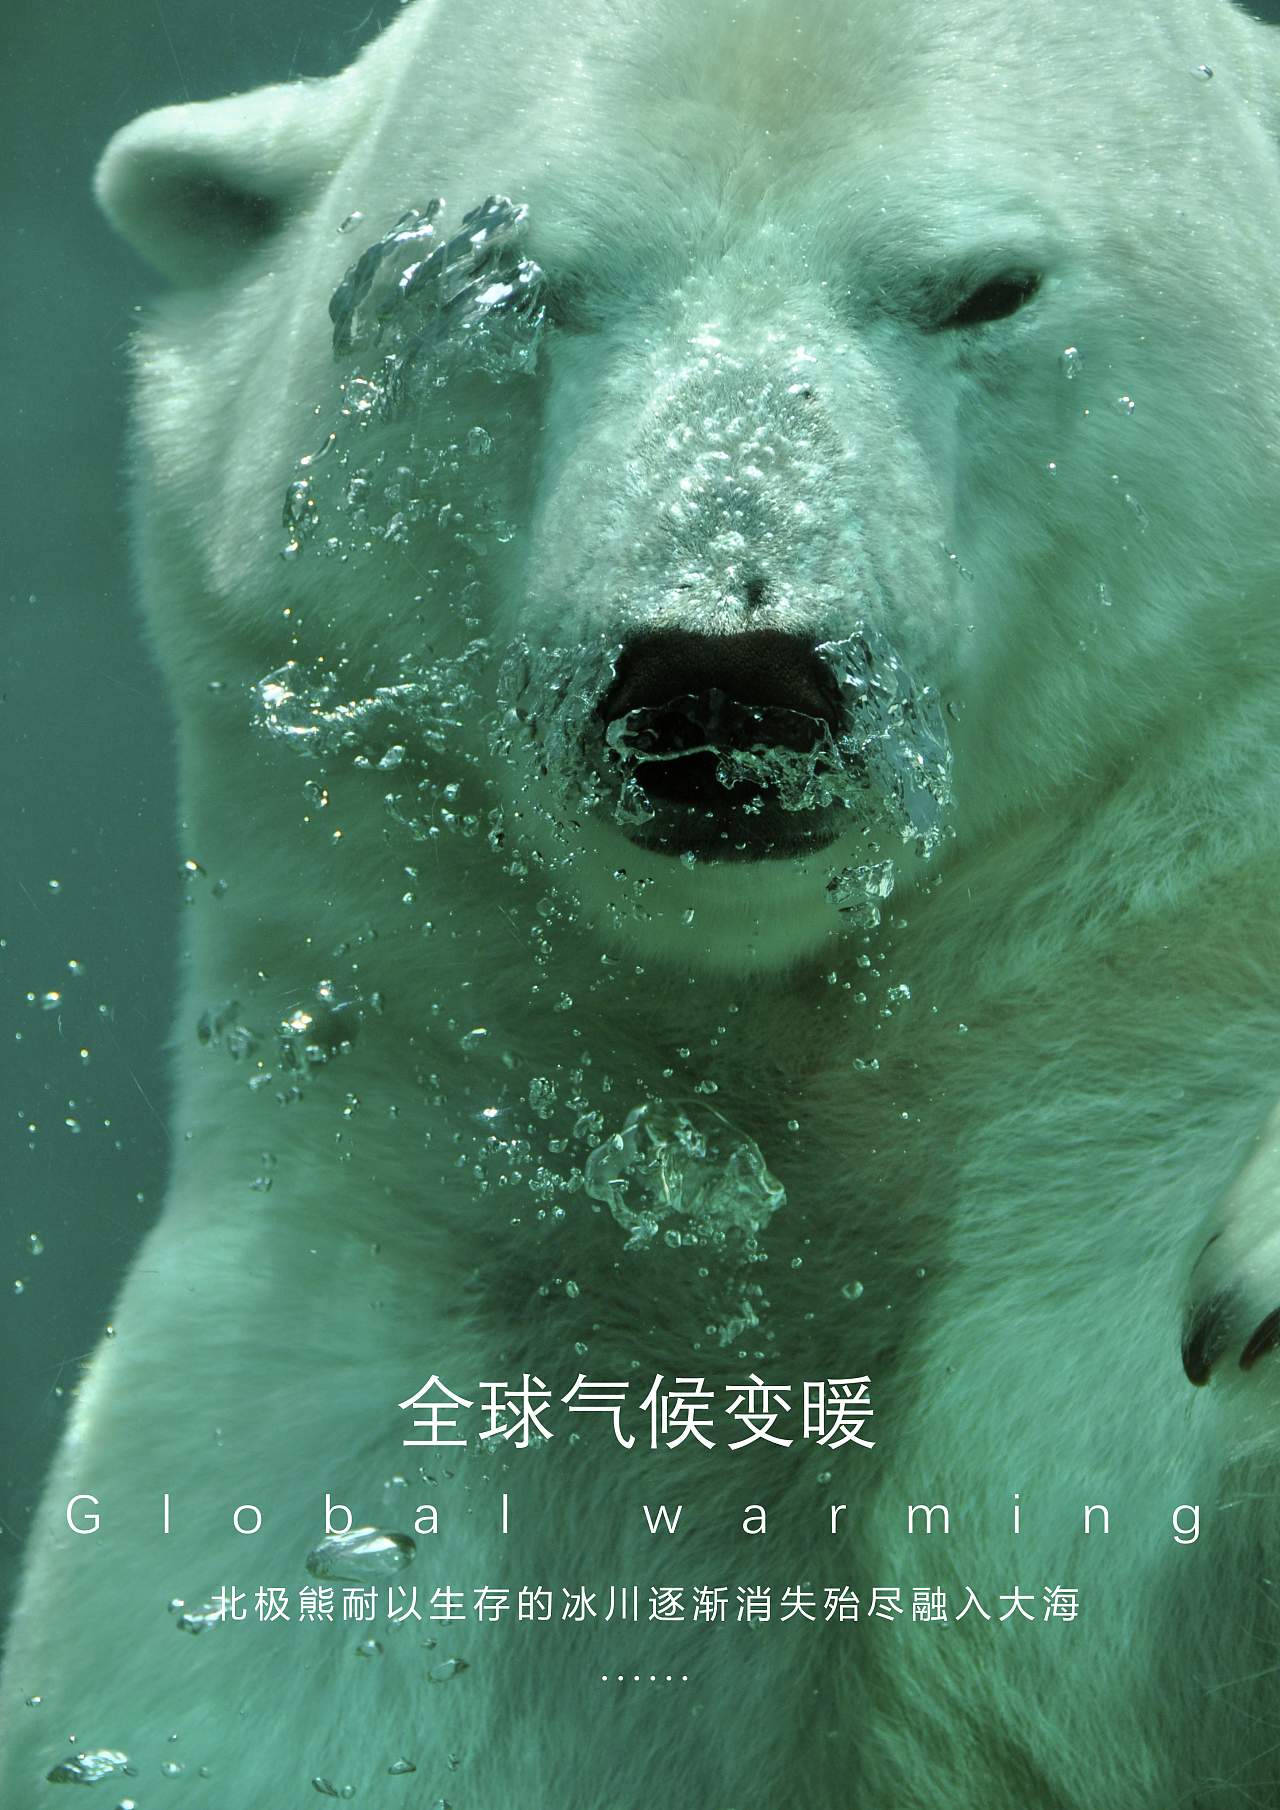 全球气候变暖,导致北极熊耐以生存的冰川